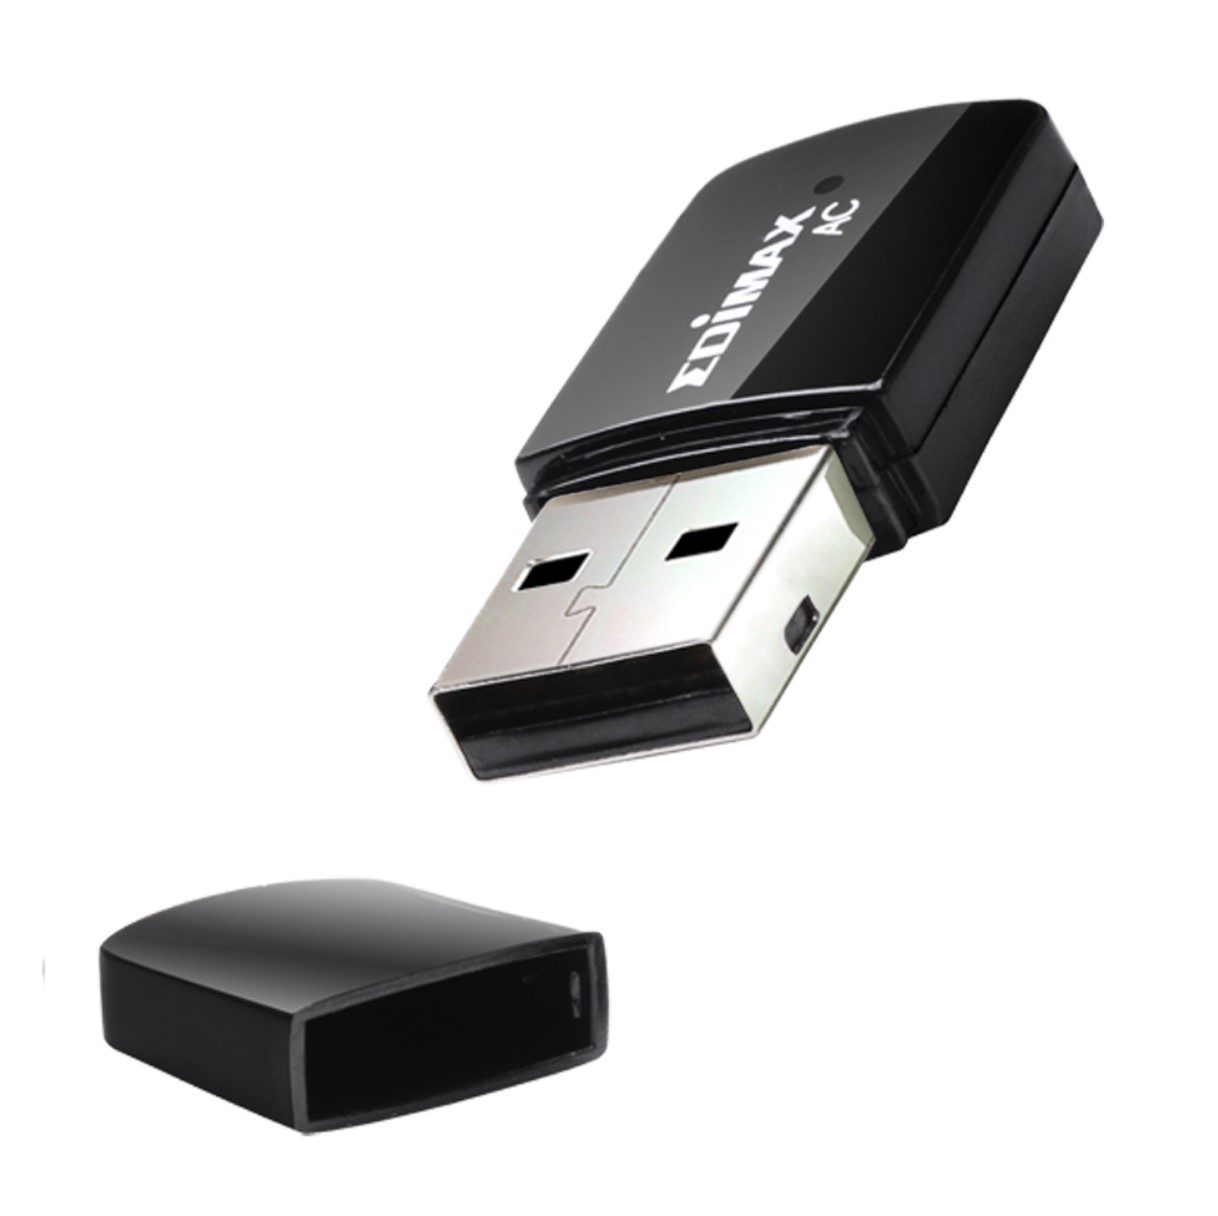 AC600 Wireless Dual-Band Mini USB AdapterEW-7811UTC